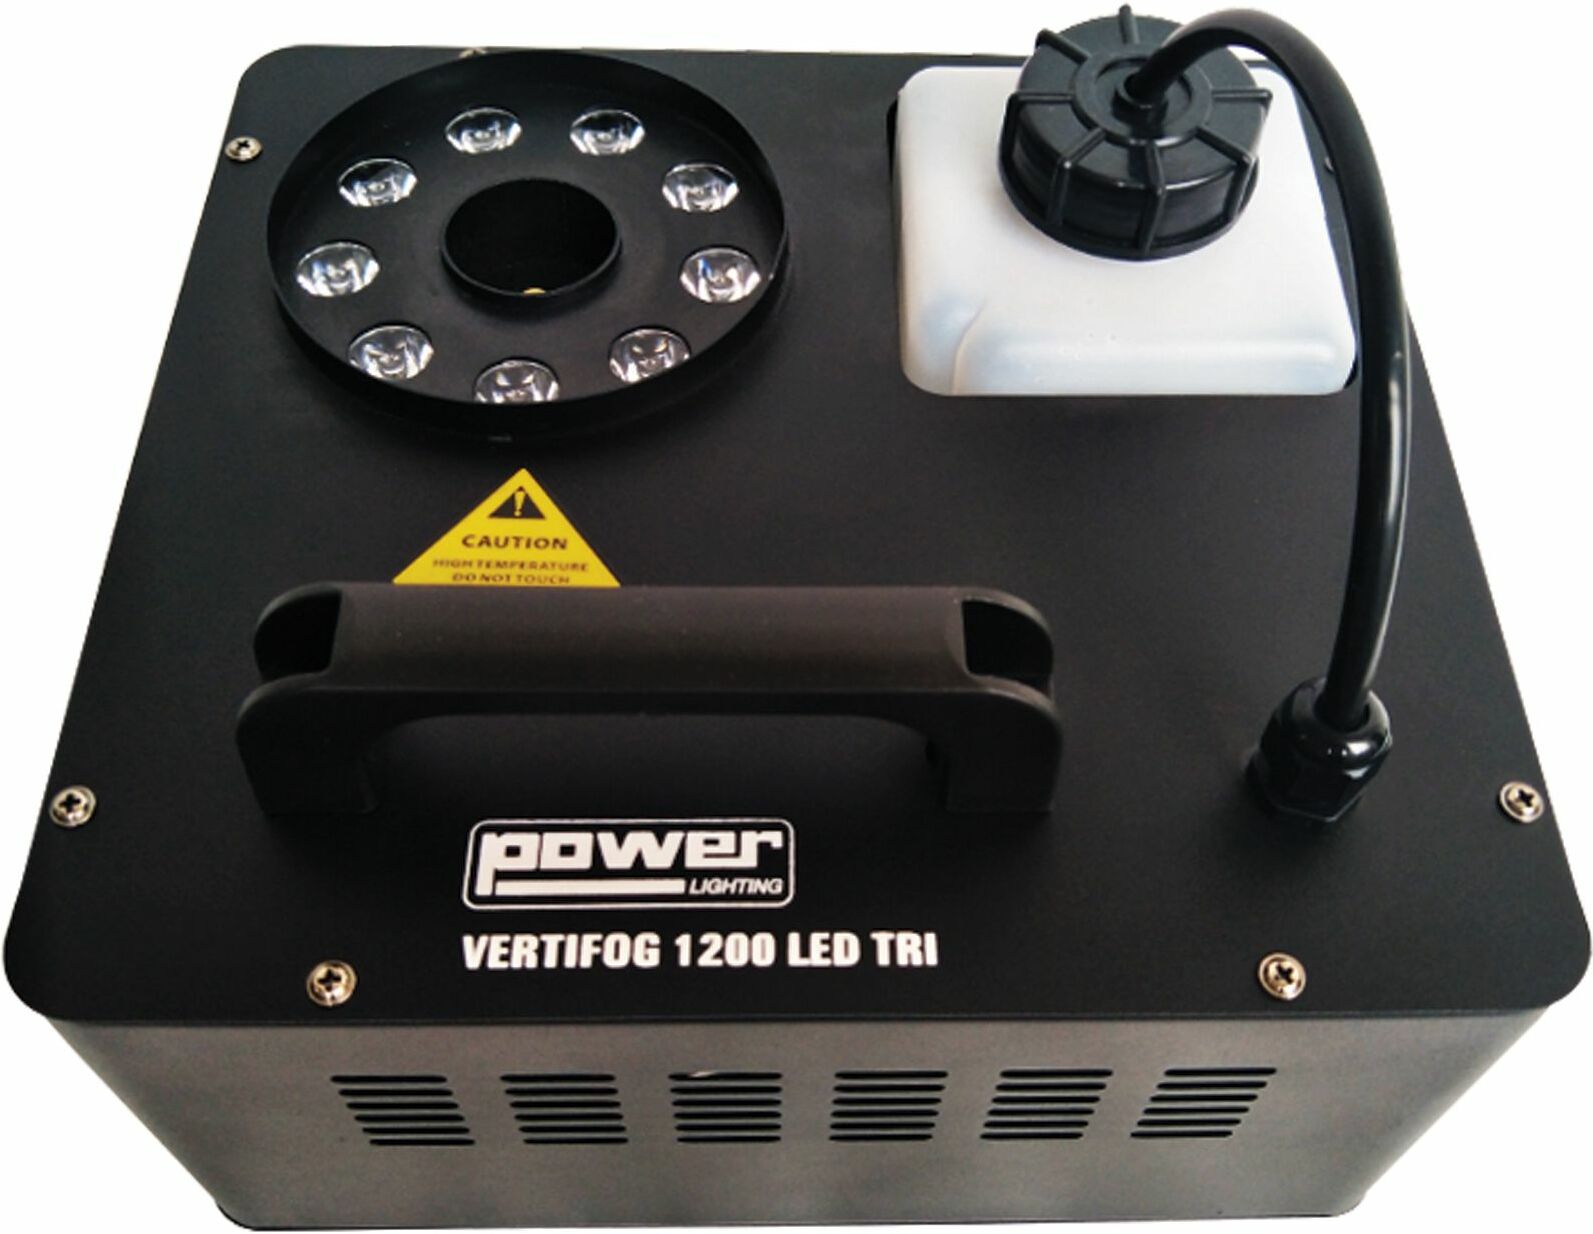 Power Lighting Vertifog 1200 Tri - Nevelmachine - Main picture